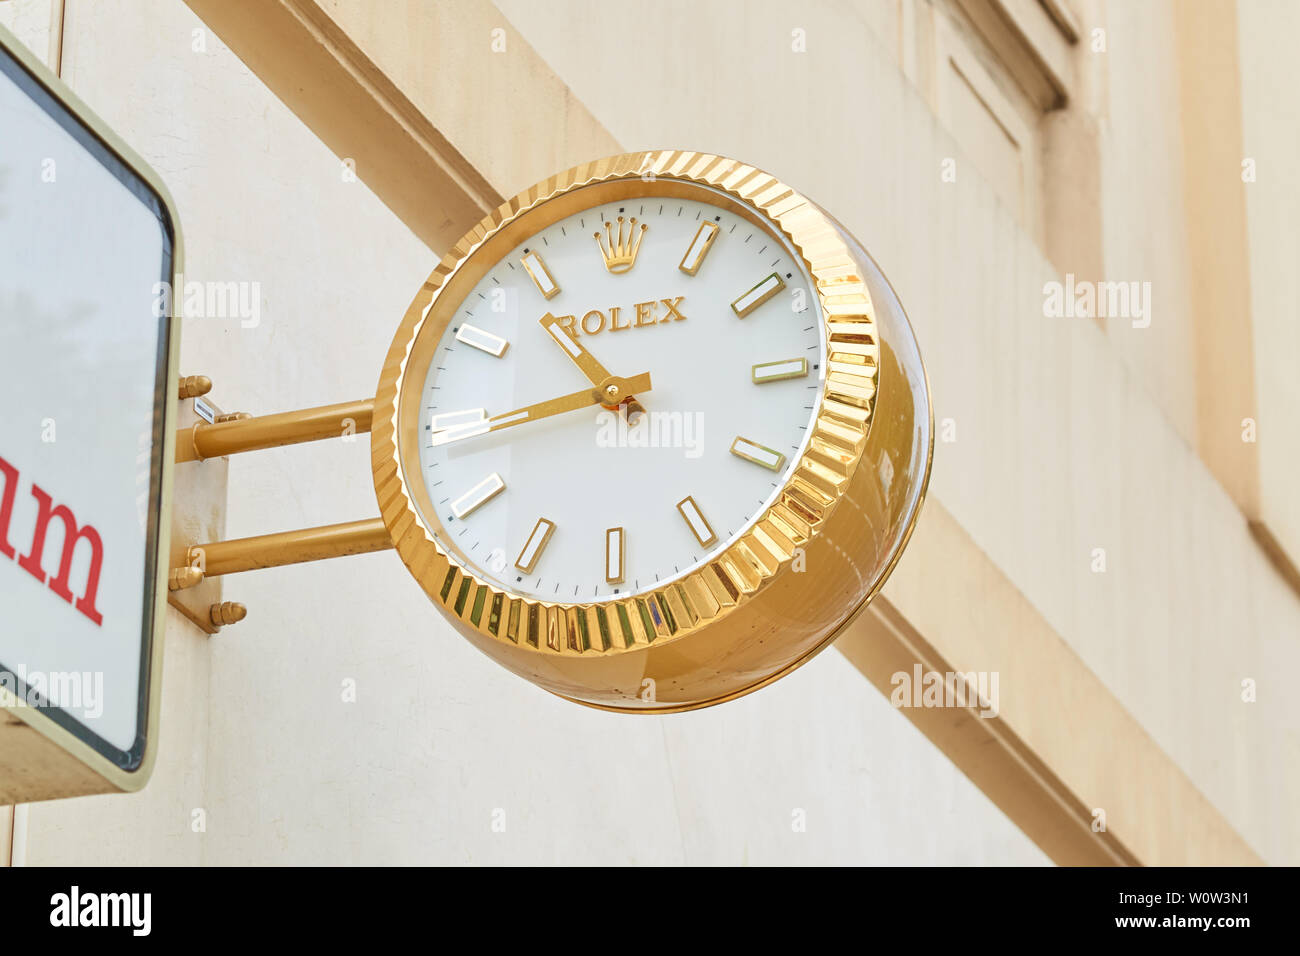 Wanduhr Für Rolex Stockfotos und -bilder Kaufen - Alamy